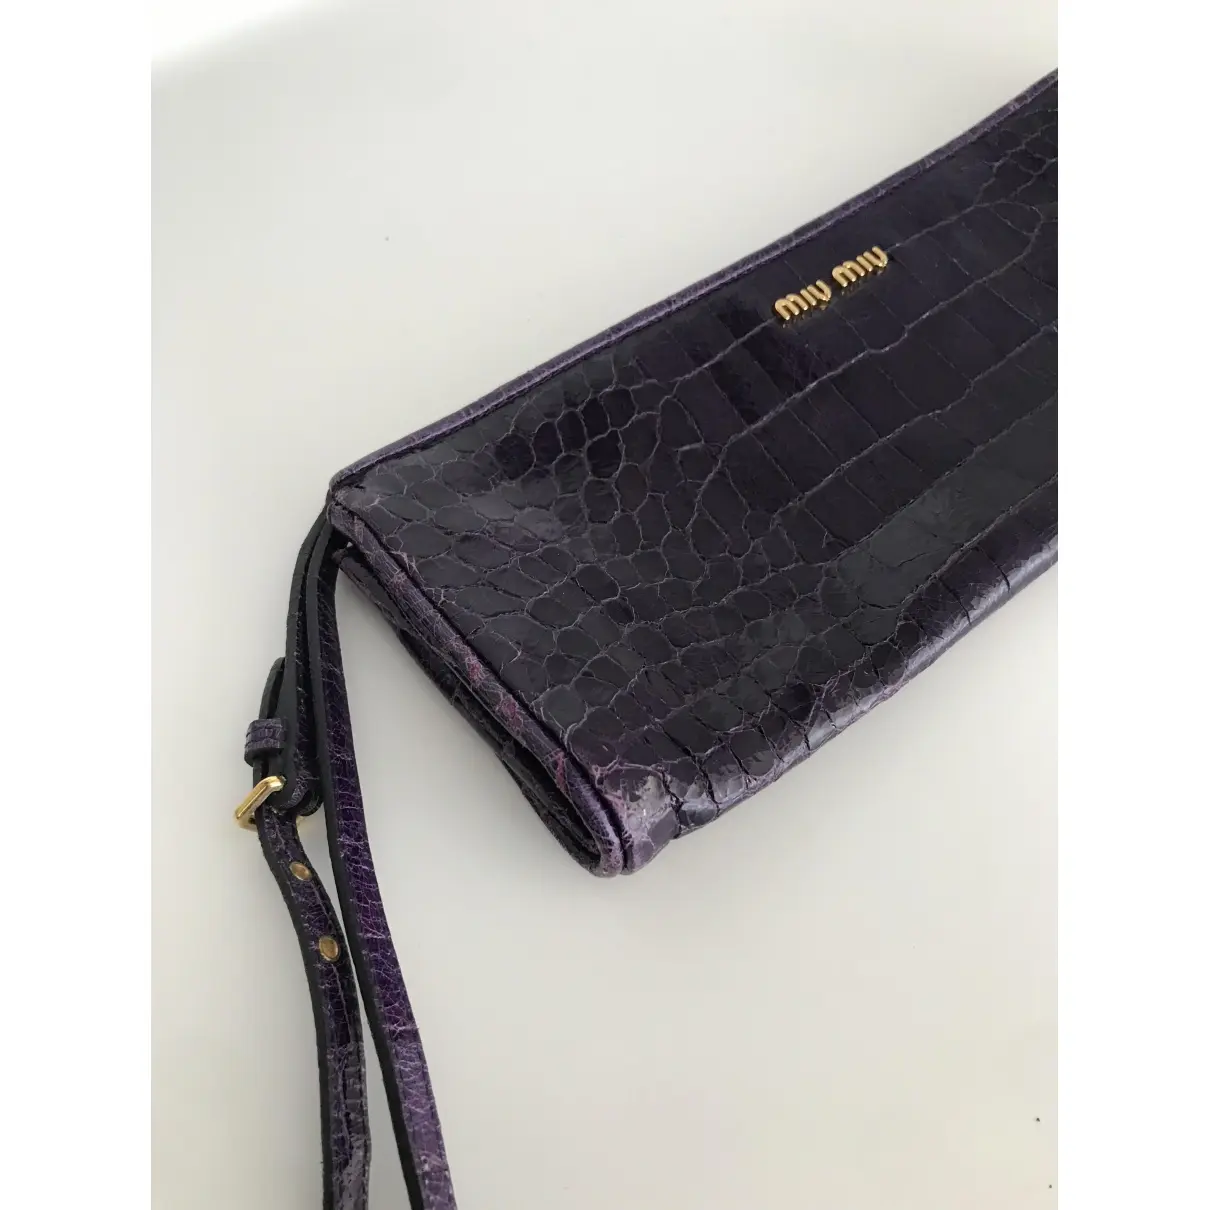 Buy Miu Miu Patent leather clutch bag online